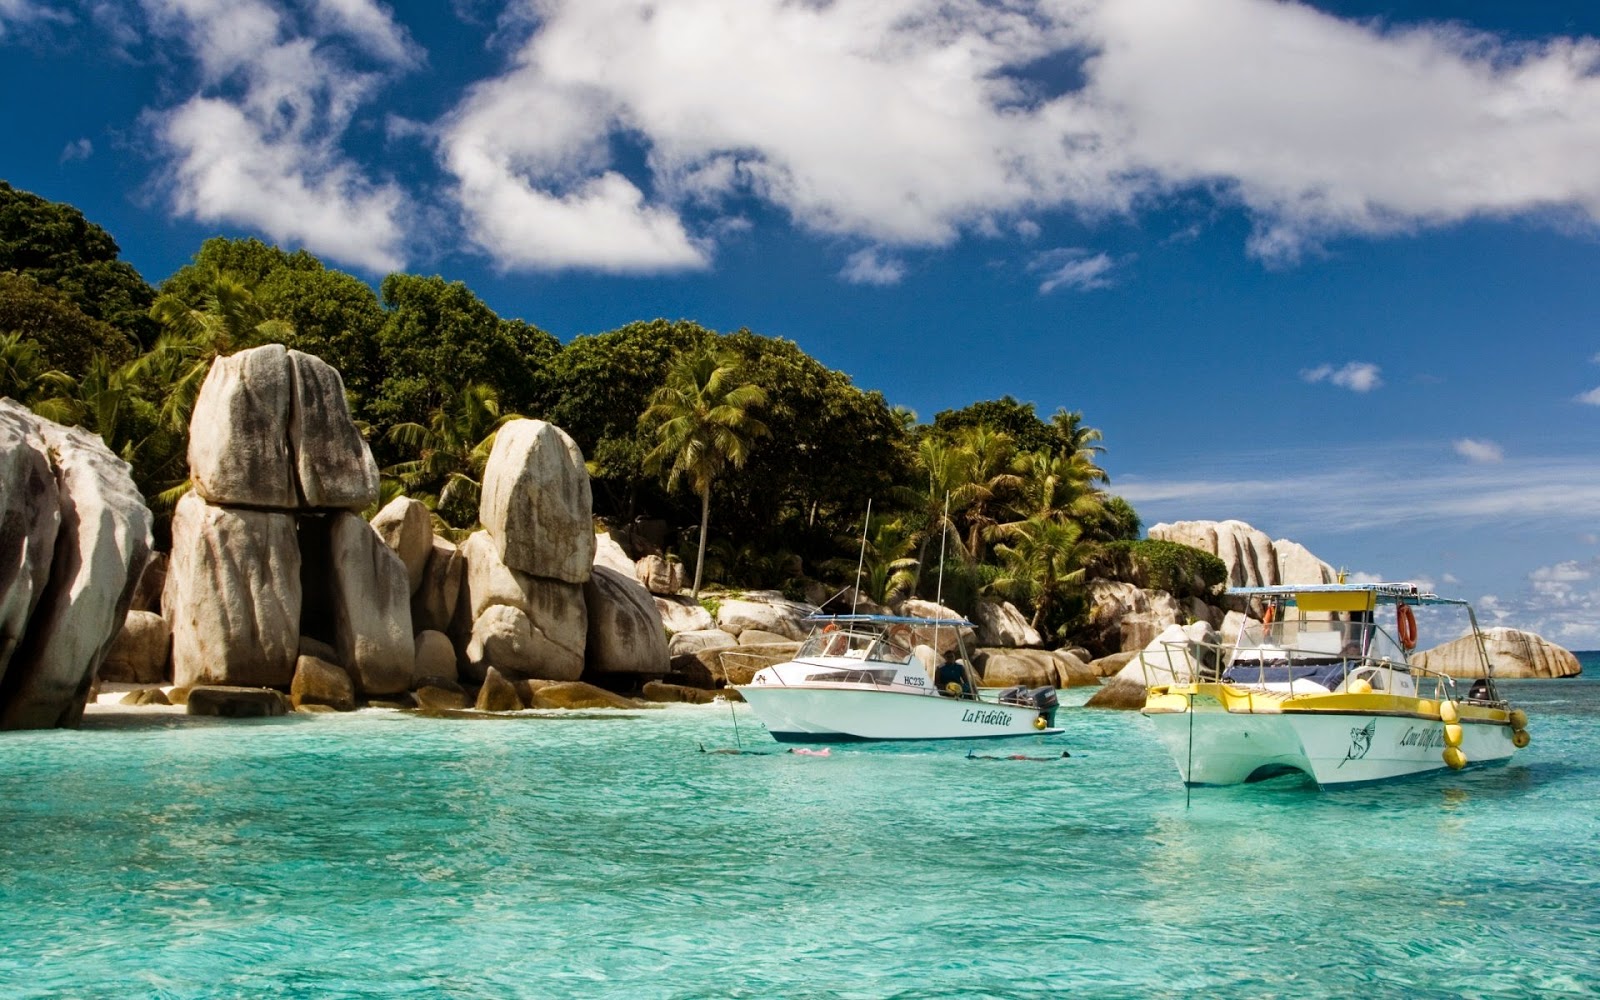 Coco Island, Seychelles - Voyage Dans Les Iles , HD Wallpaper & Backgrounds